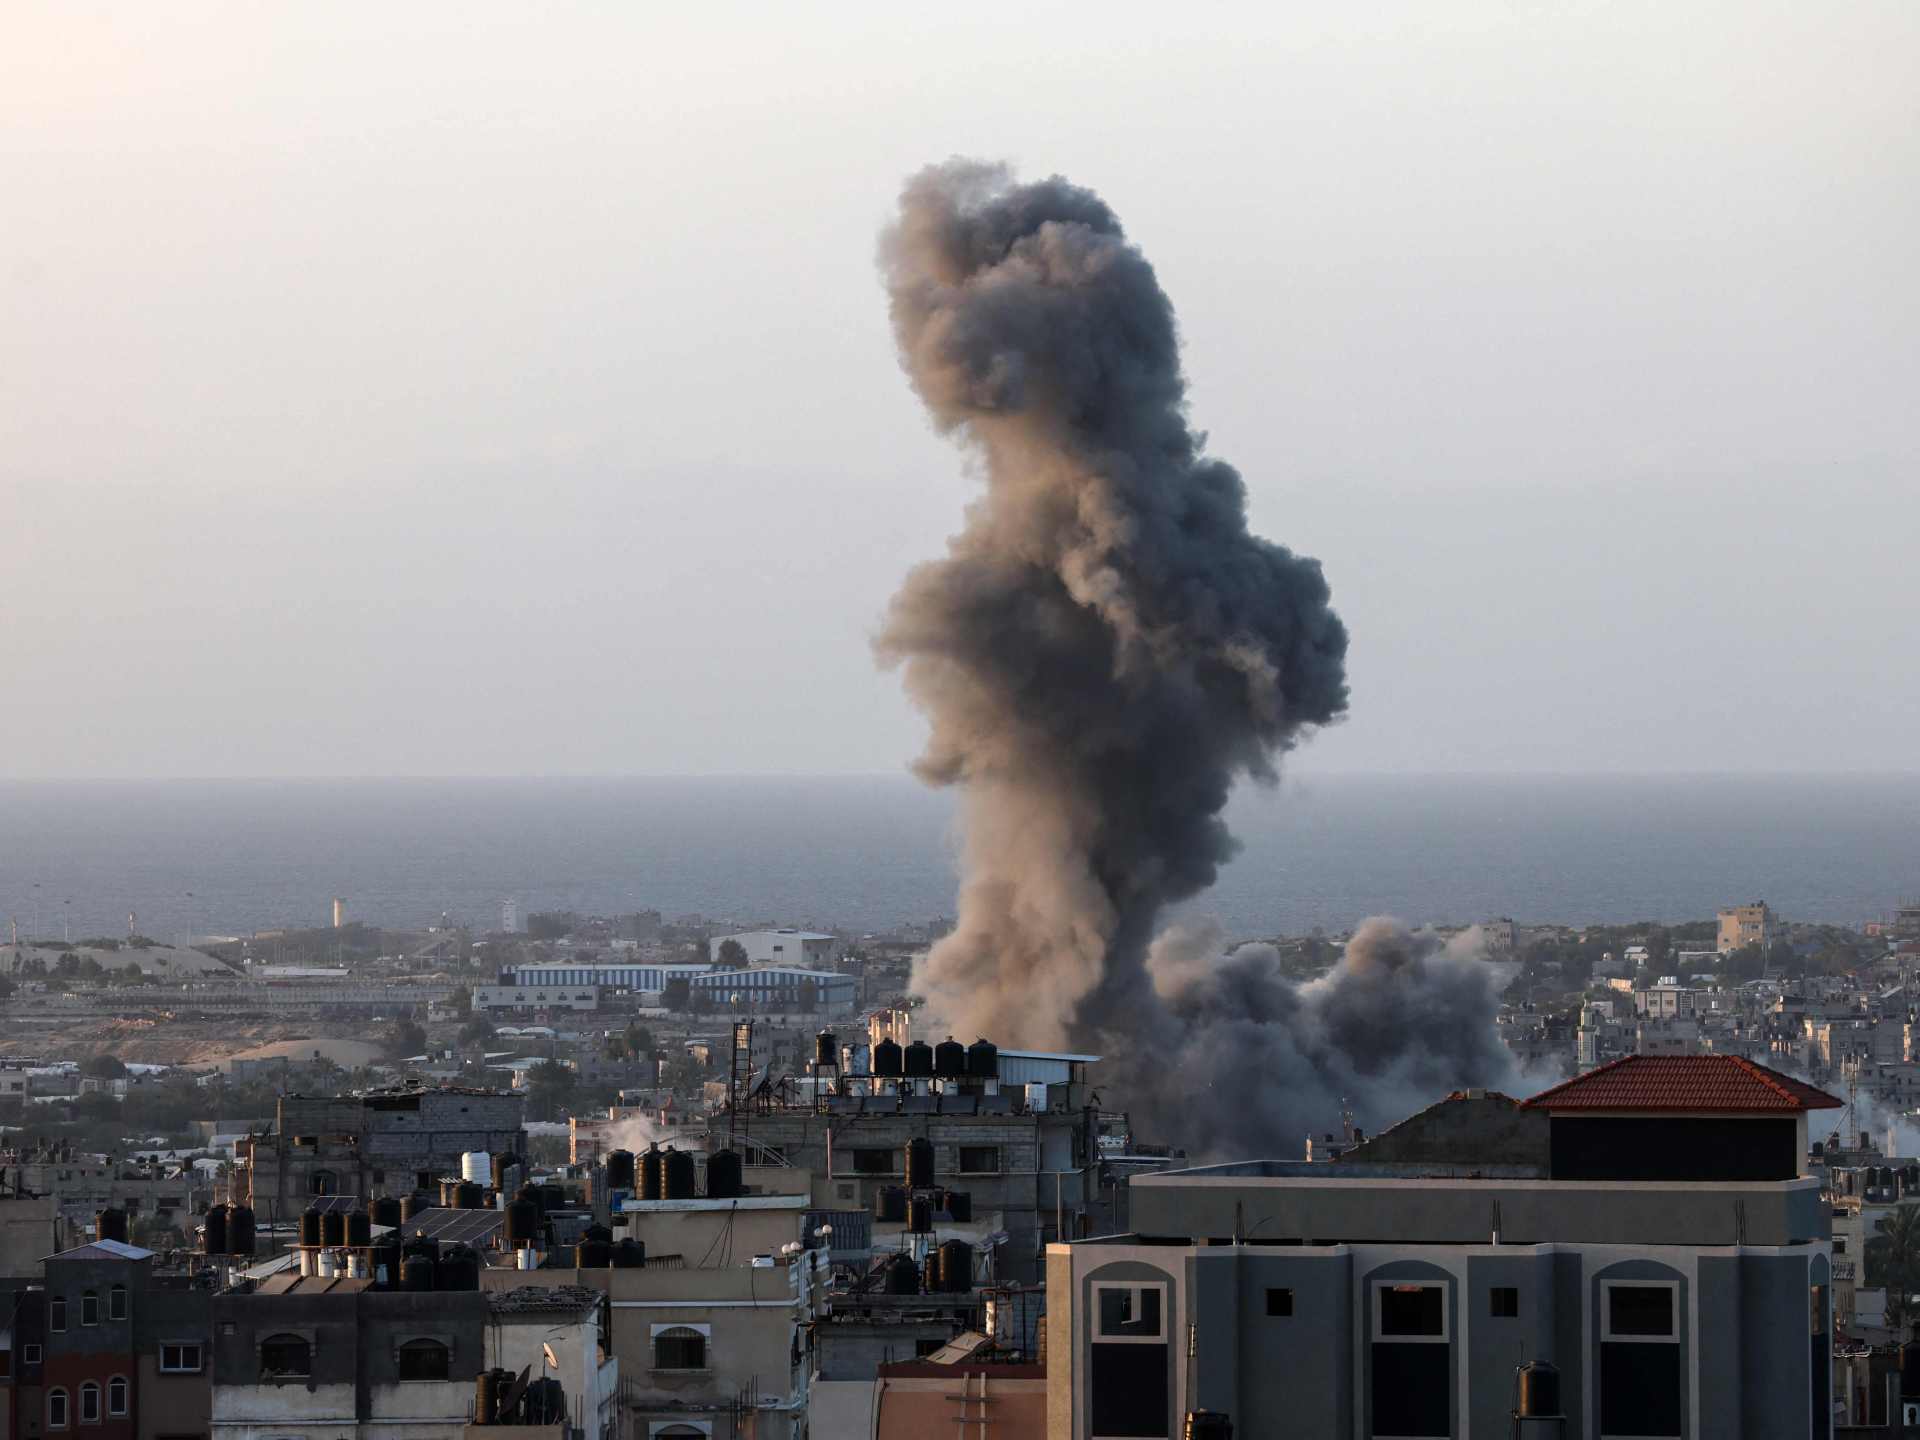 بايدن يعلن عن “هدن” يومية بغزة وإسرائيل تعتبرها إجراءات تكتيكية | أخبار – البوكس نيوز